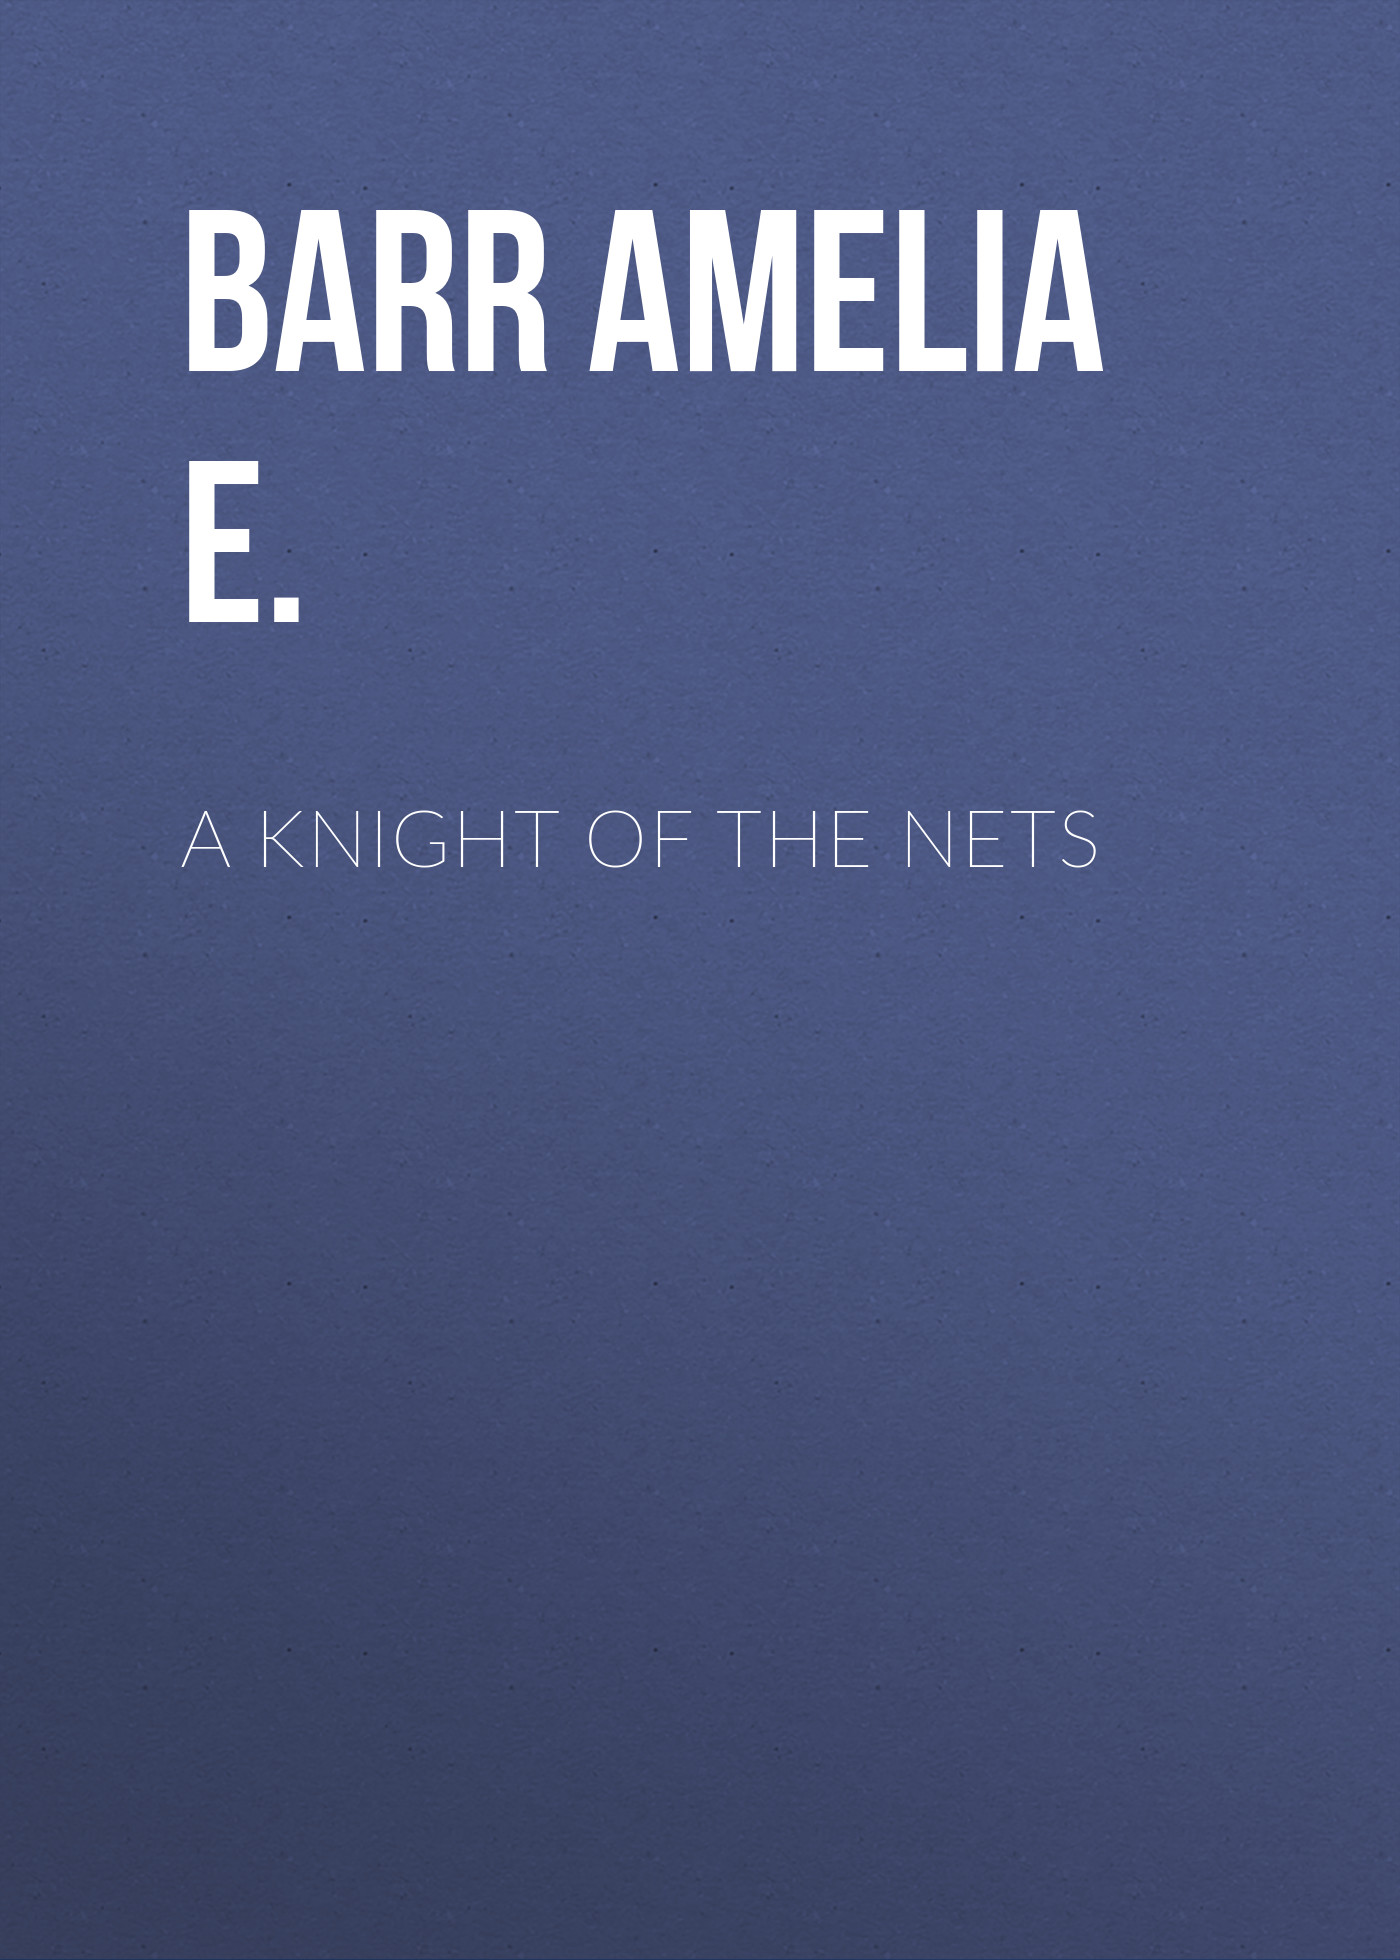 Книга A Knight of the Nets из серии , созданная Amelia Barr, может относится к жанру Зарубежная классика, Зарубежная старинная литература. Стоимость электронной книги A Knight of the Nets с идентификатором 36363782 составляет 0 руб.